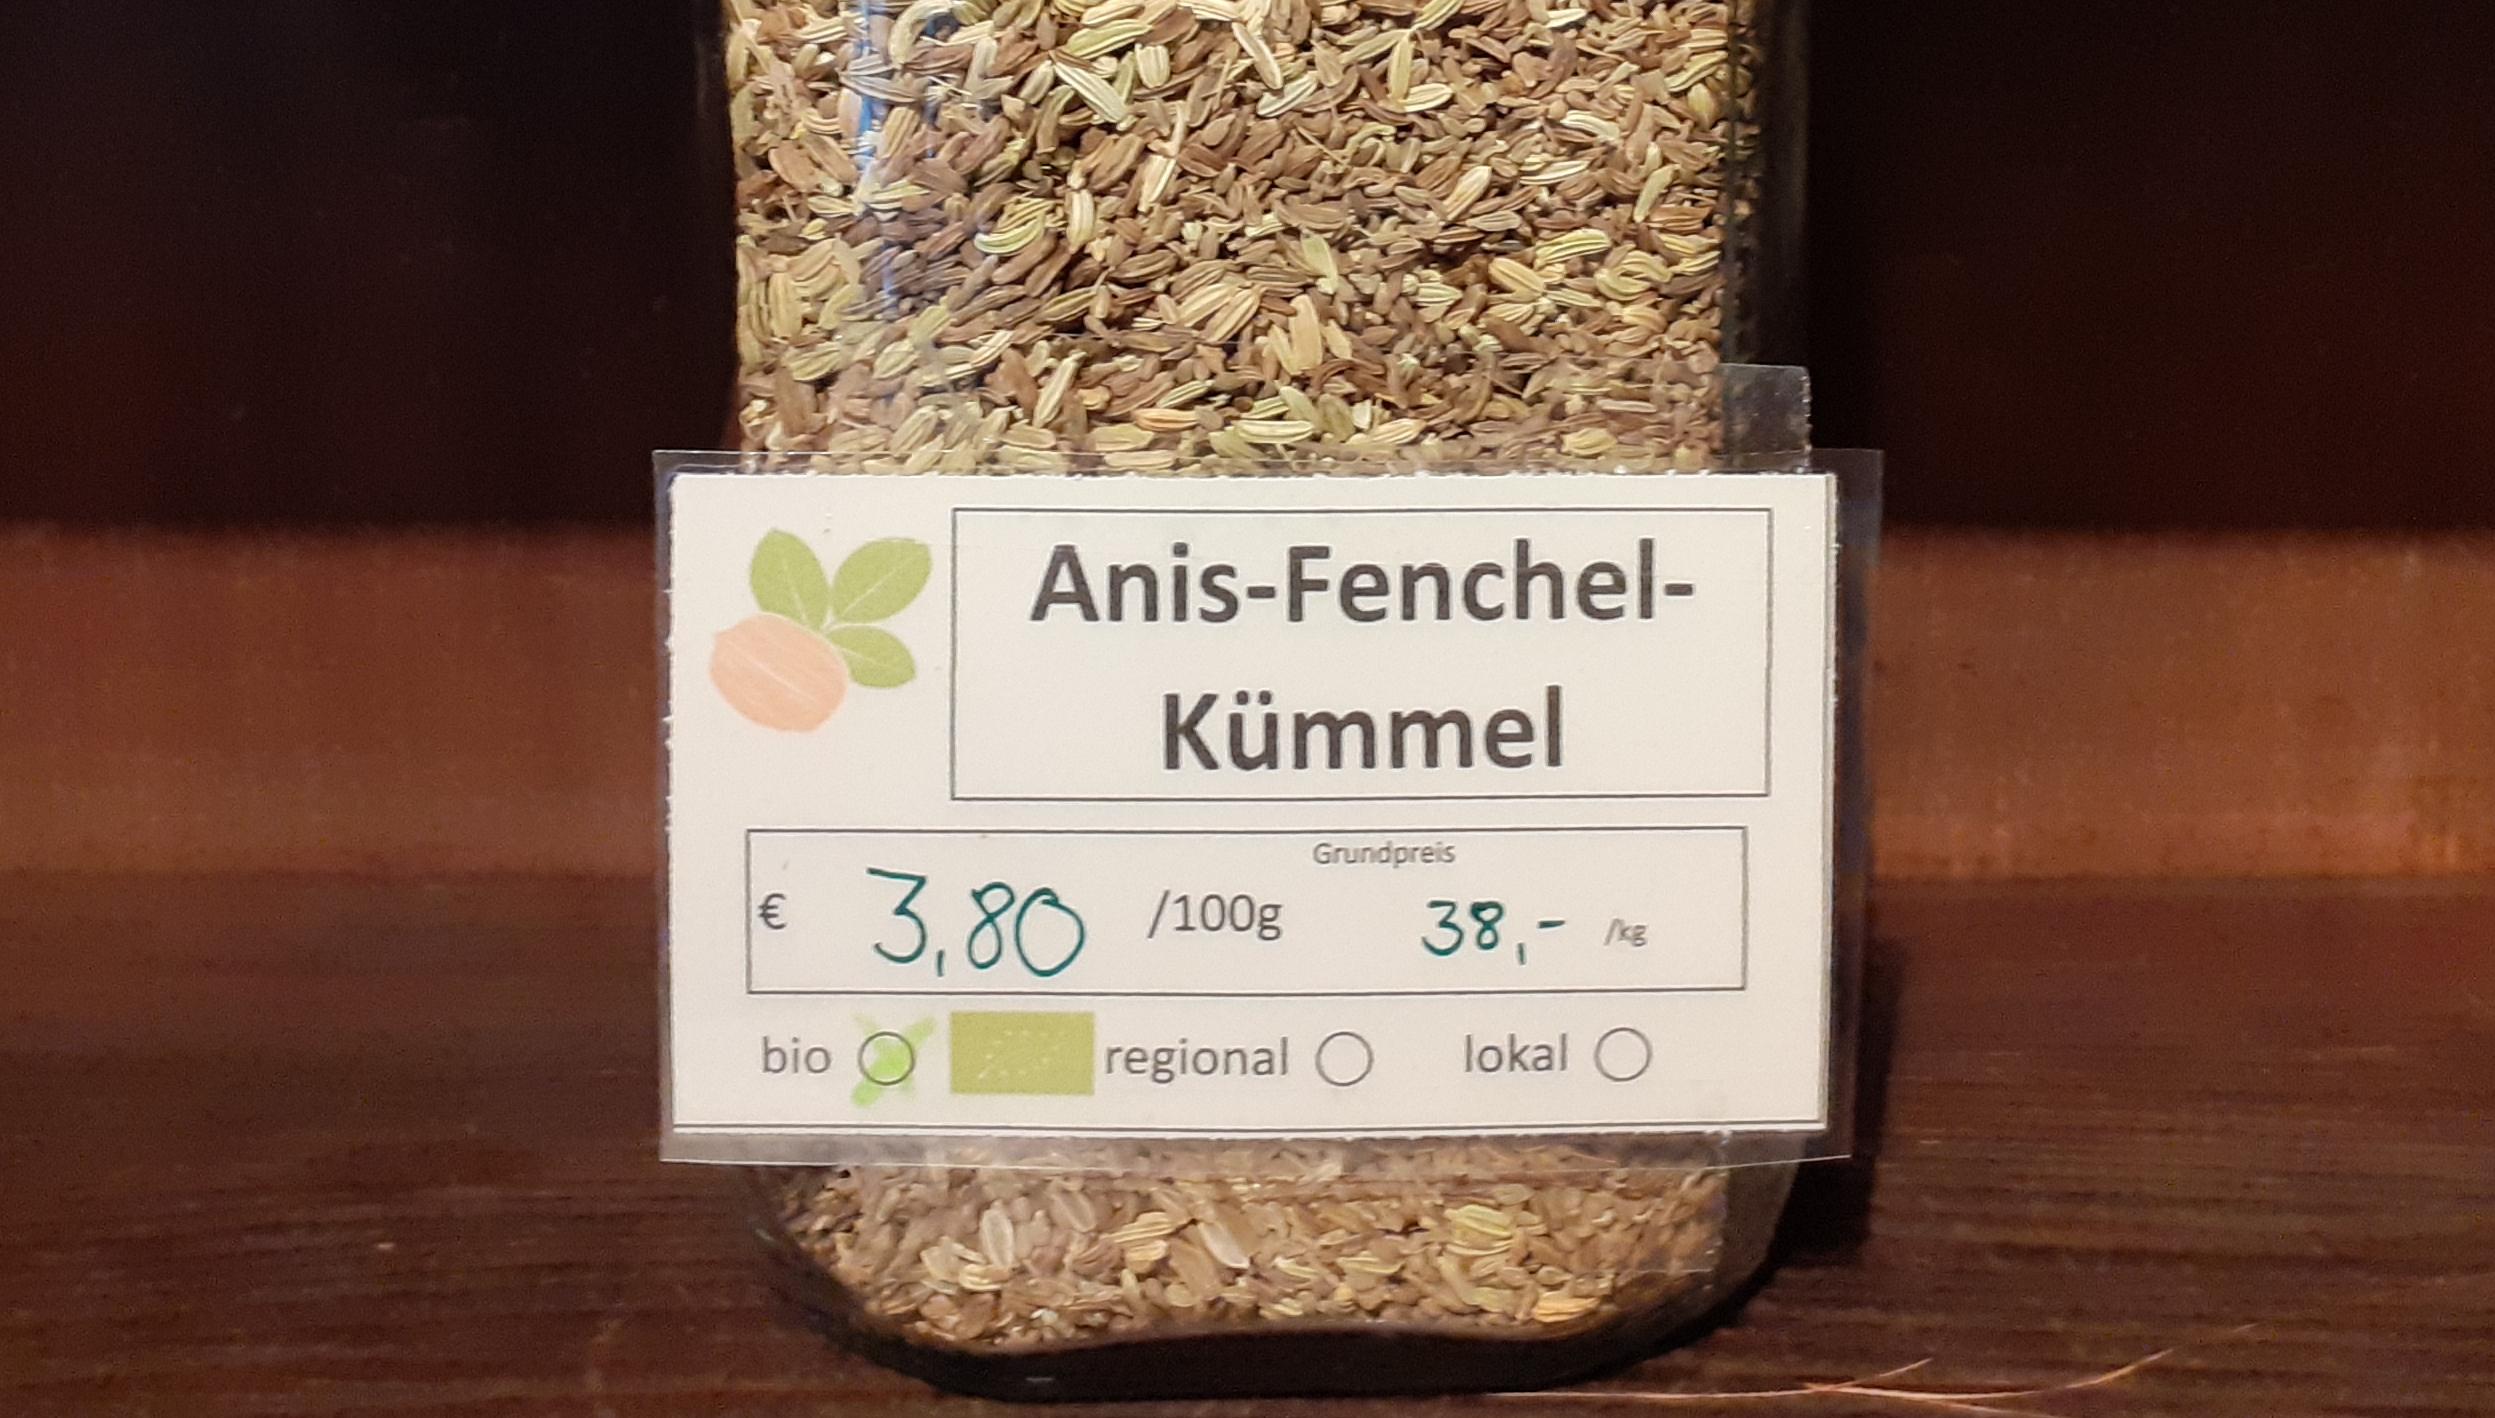 Anis-Fenchel-Kümmel